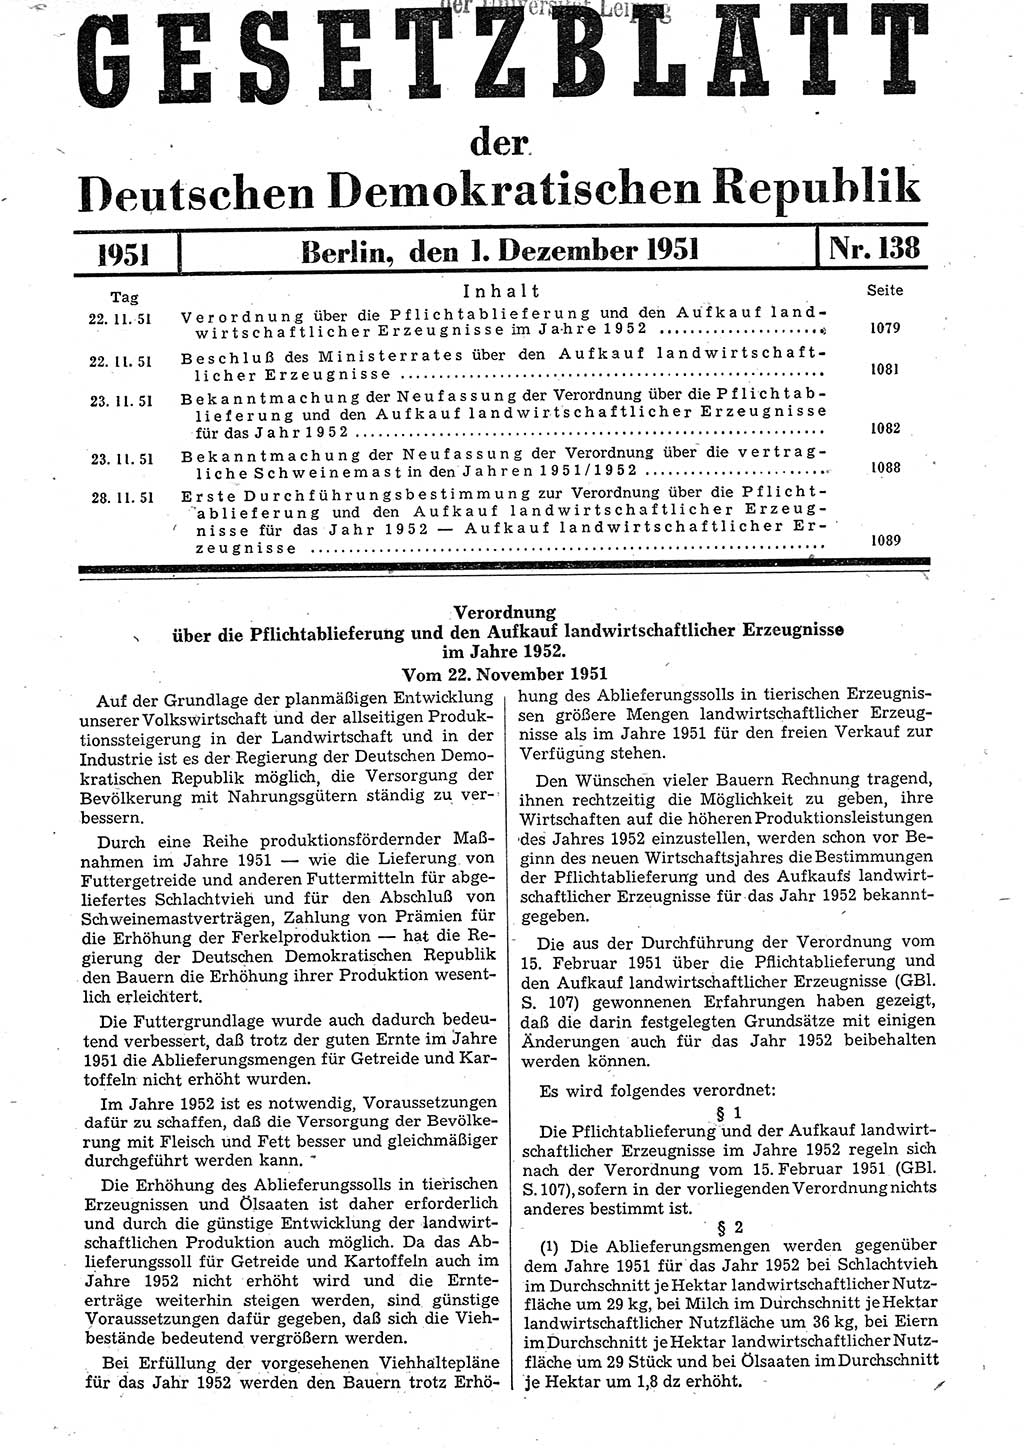 Gesetzblatt (GBl.) der Deutschen Demokratischen Republik (DDR) 1951, Seite 1079 (GBl. DDR 1951, S. 1079)